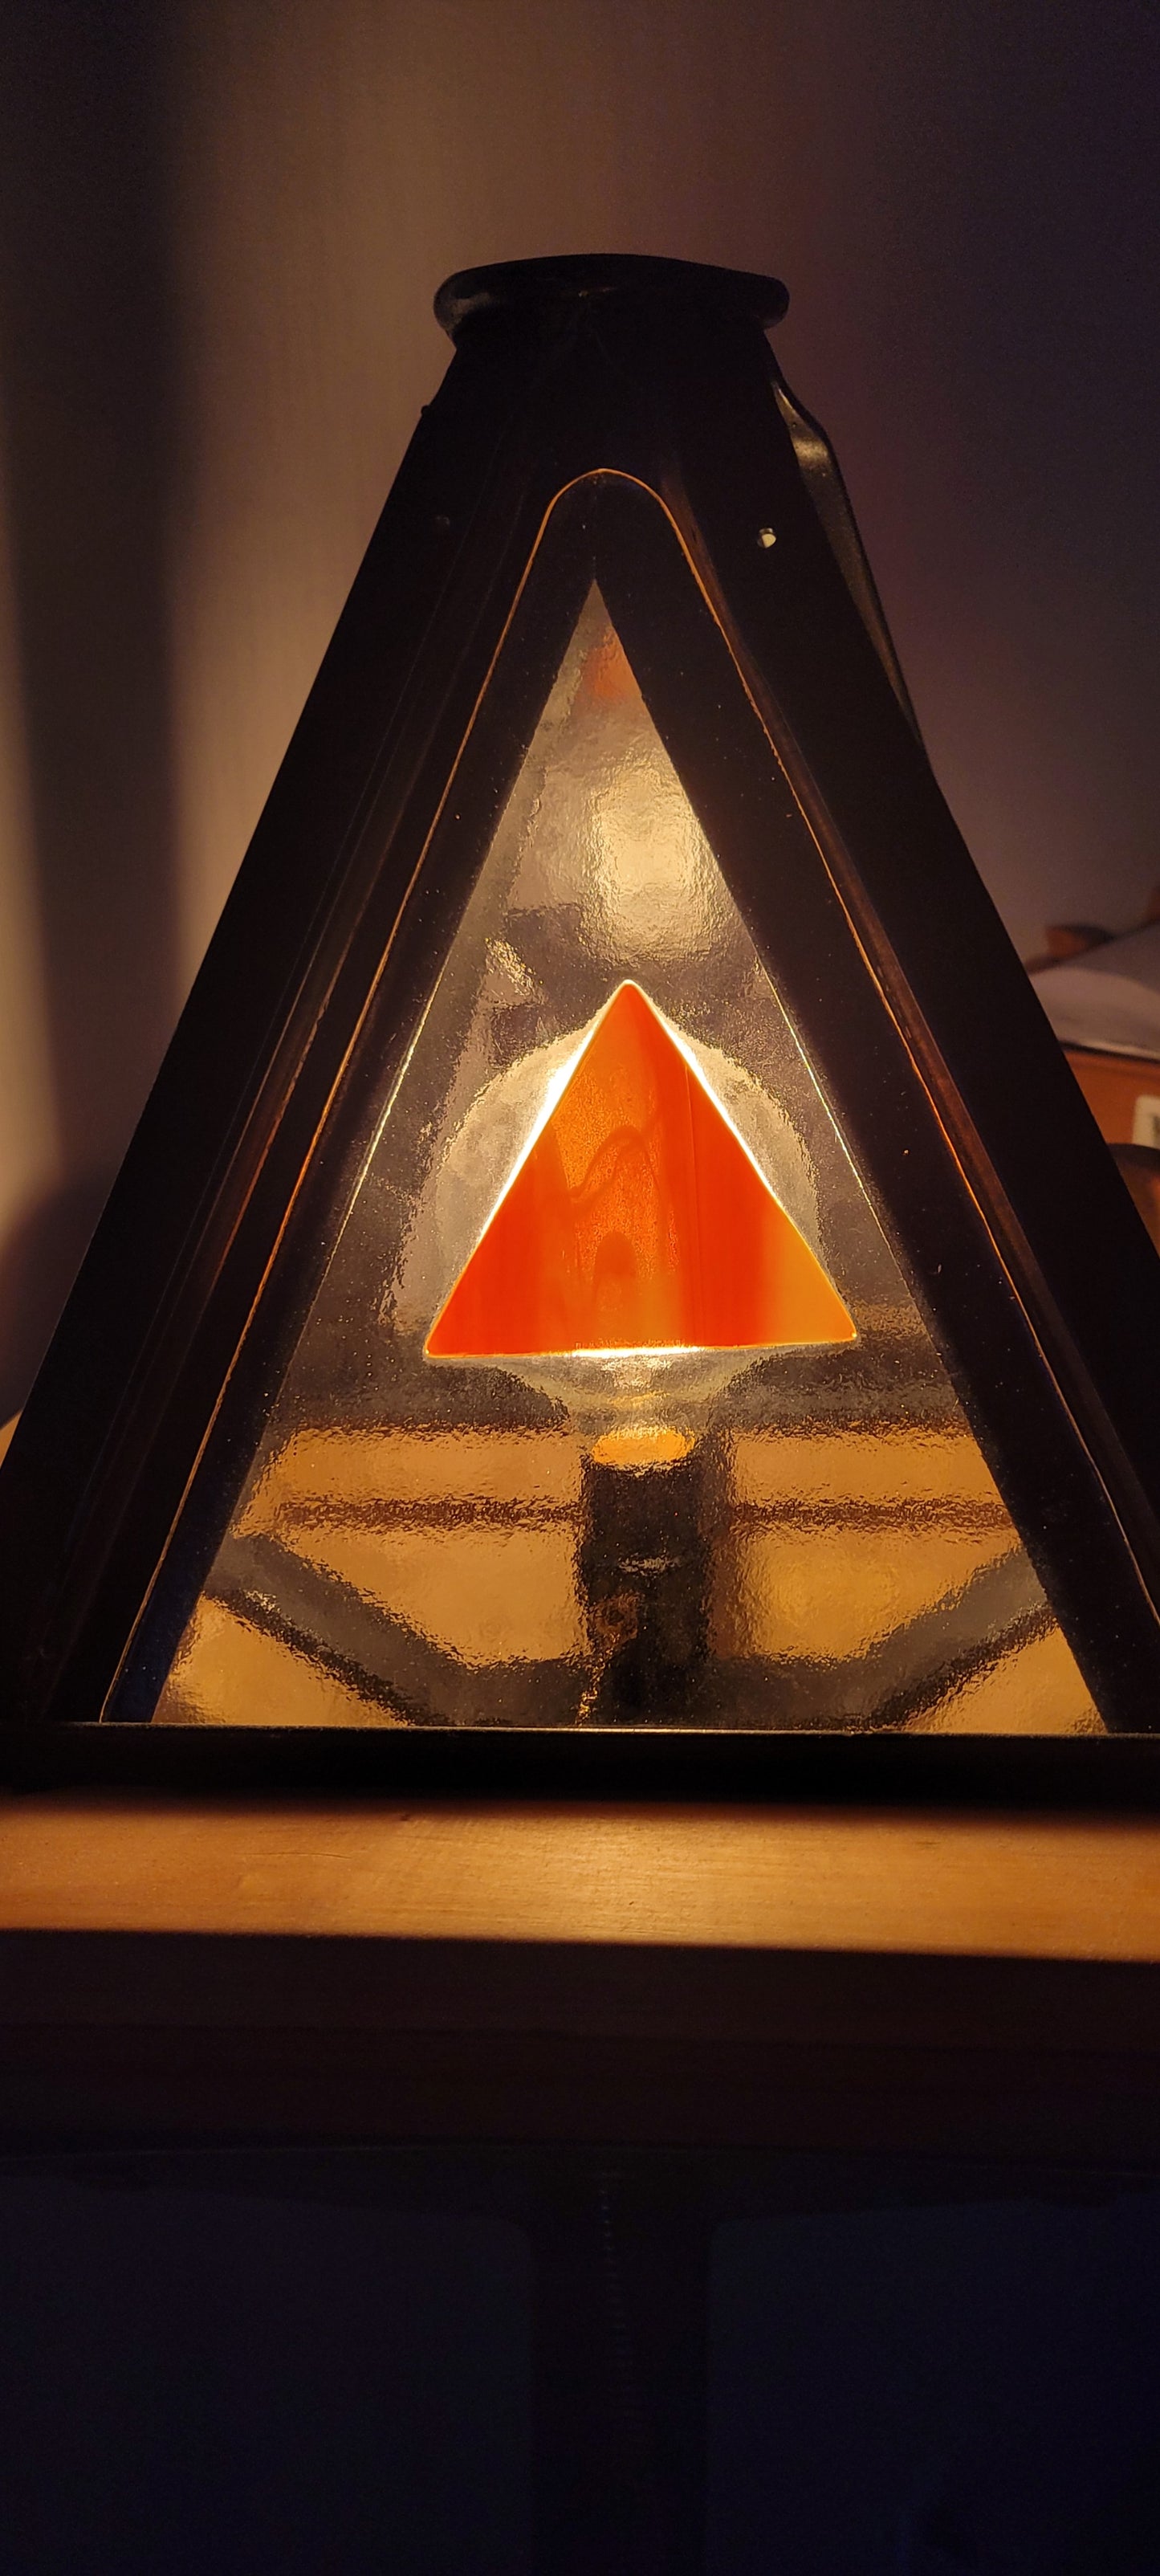 Lampe pyramidale sur pied des 4 éléments, acier, acier inox, verre fusionné, merisier, géometrique, industrielle, nature